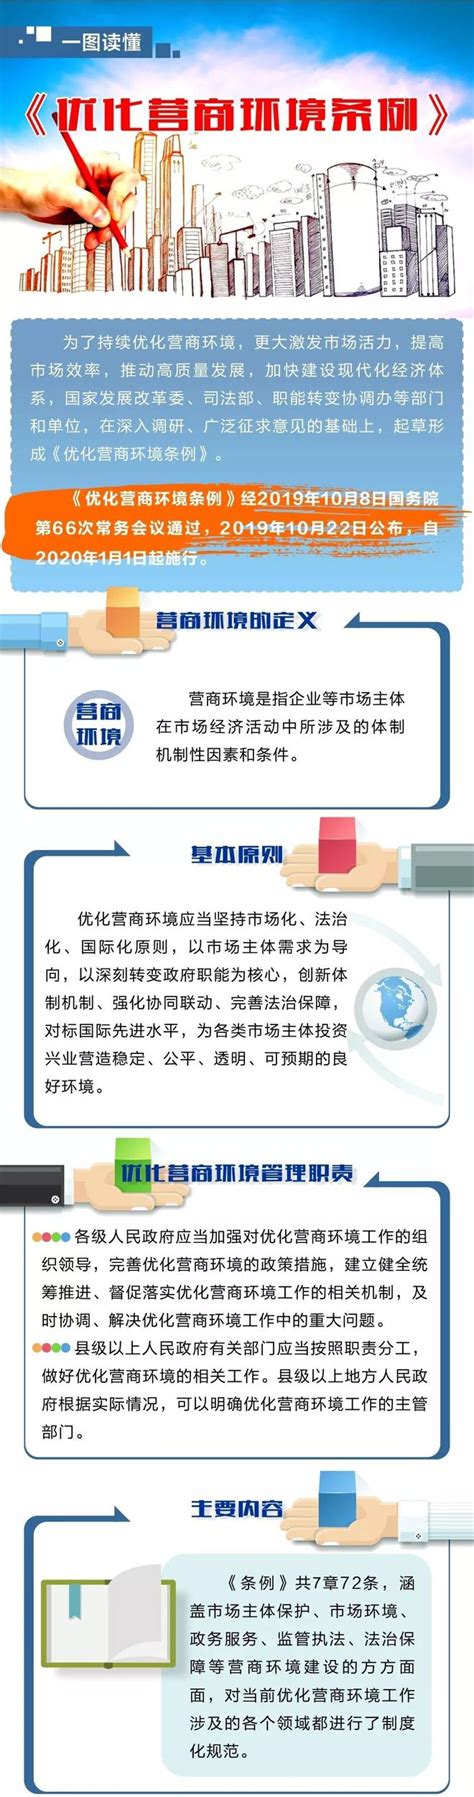 杭州营商环境优化改革